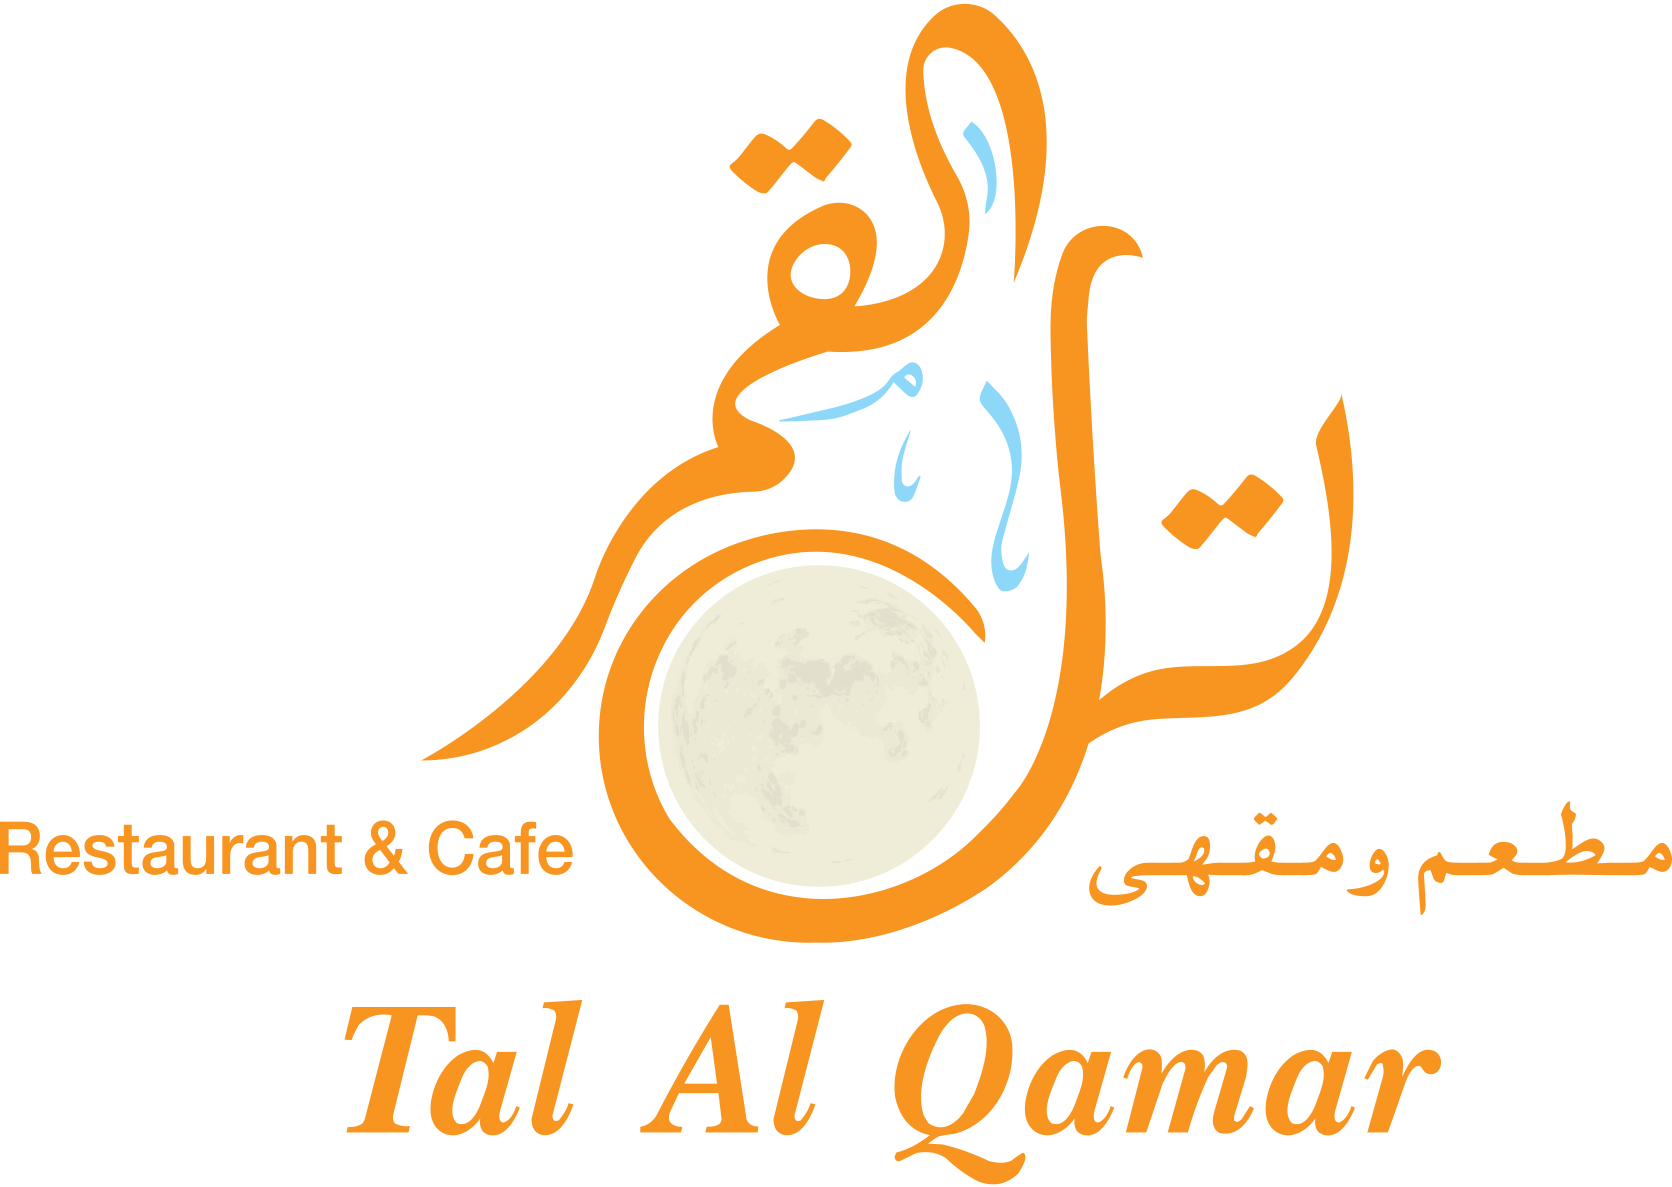 Tal Al Qamar Restaurant